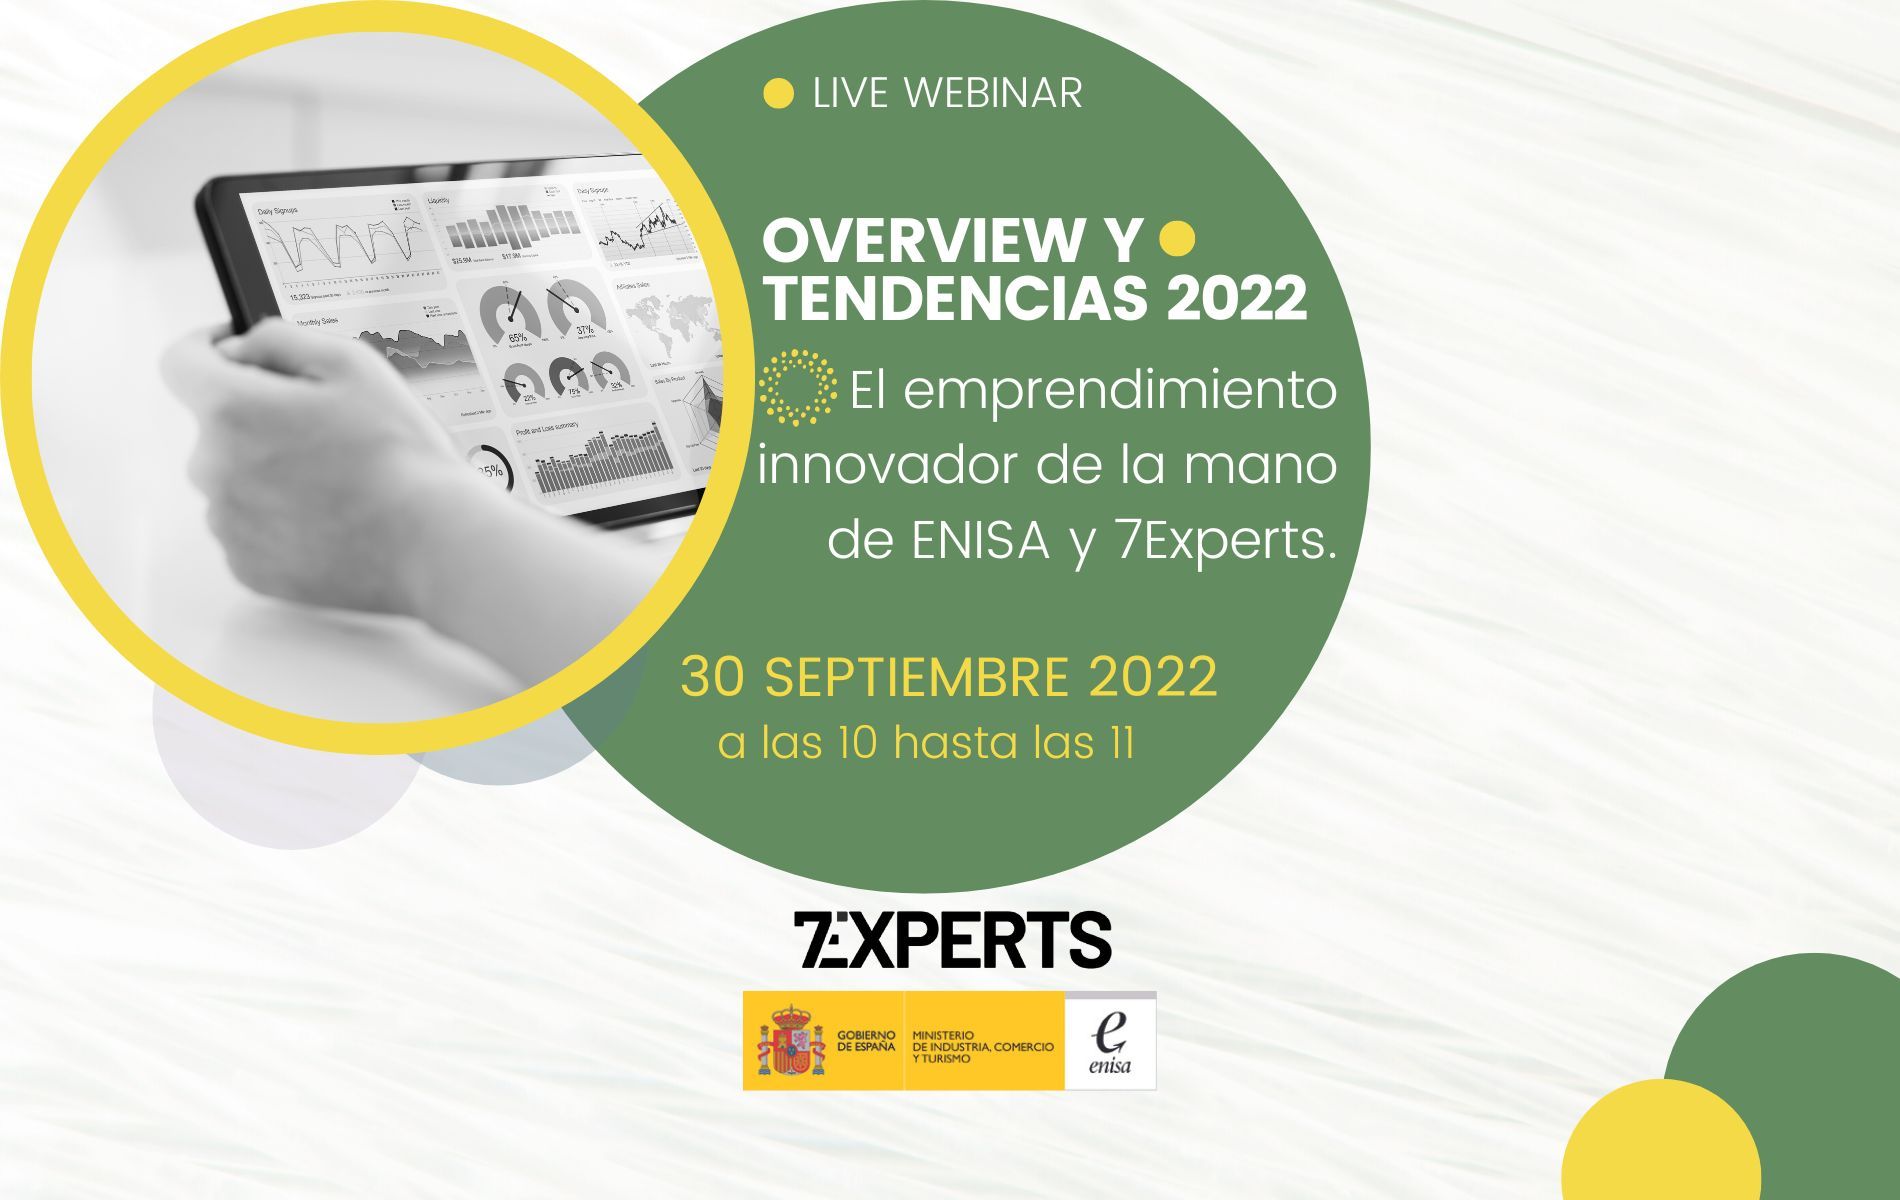 Webinar - Overview y Tendencias 2022 con ENISA y 7Experts